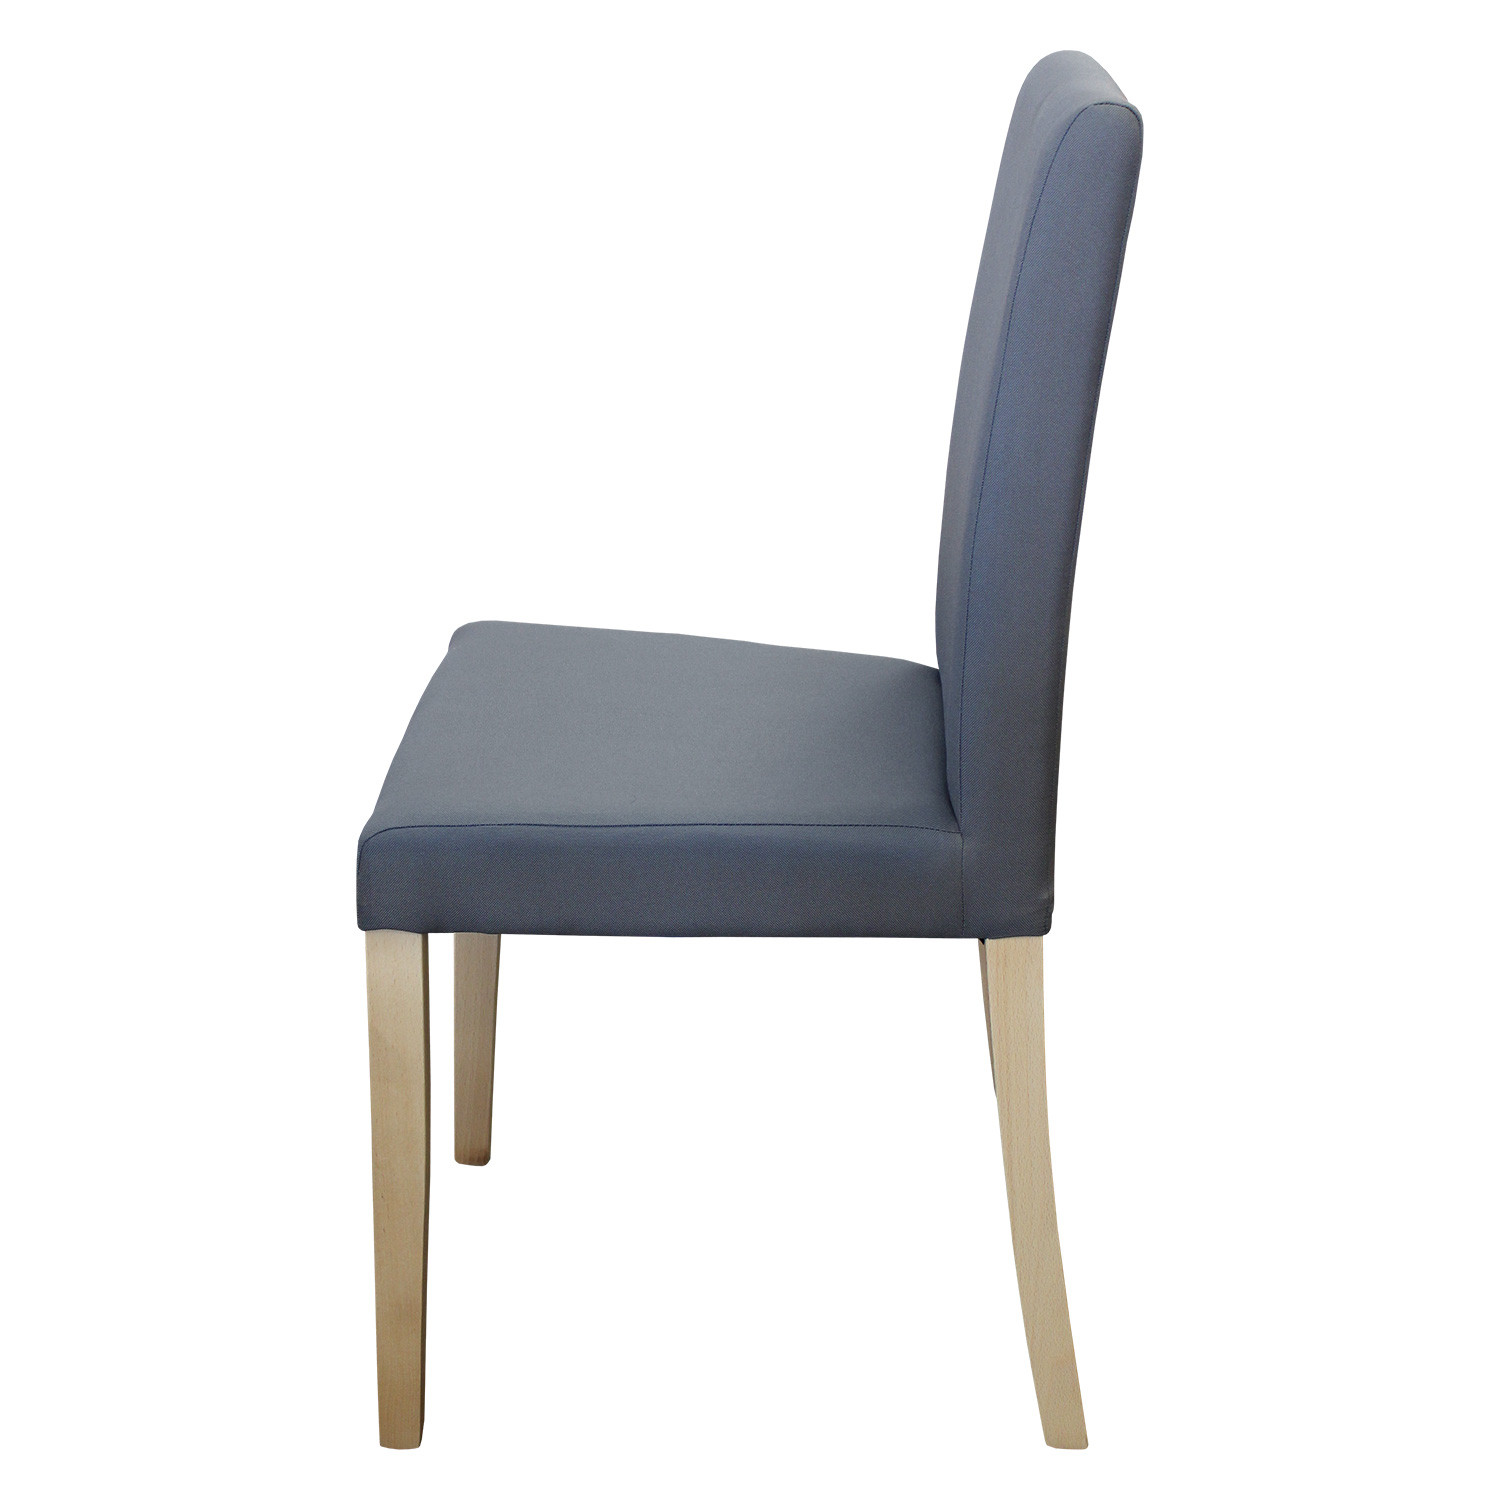 IDEA обеденный стул PRIMA серый/светлые ножки